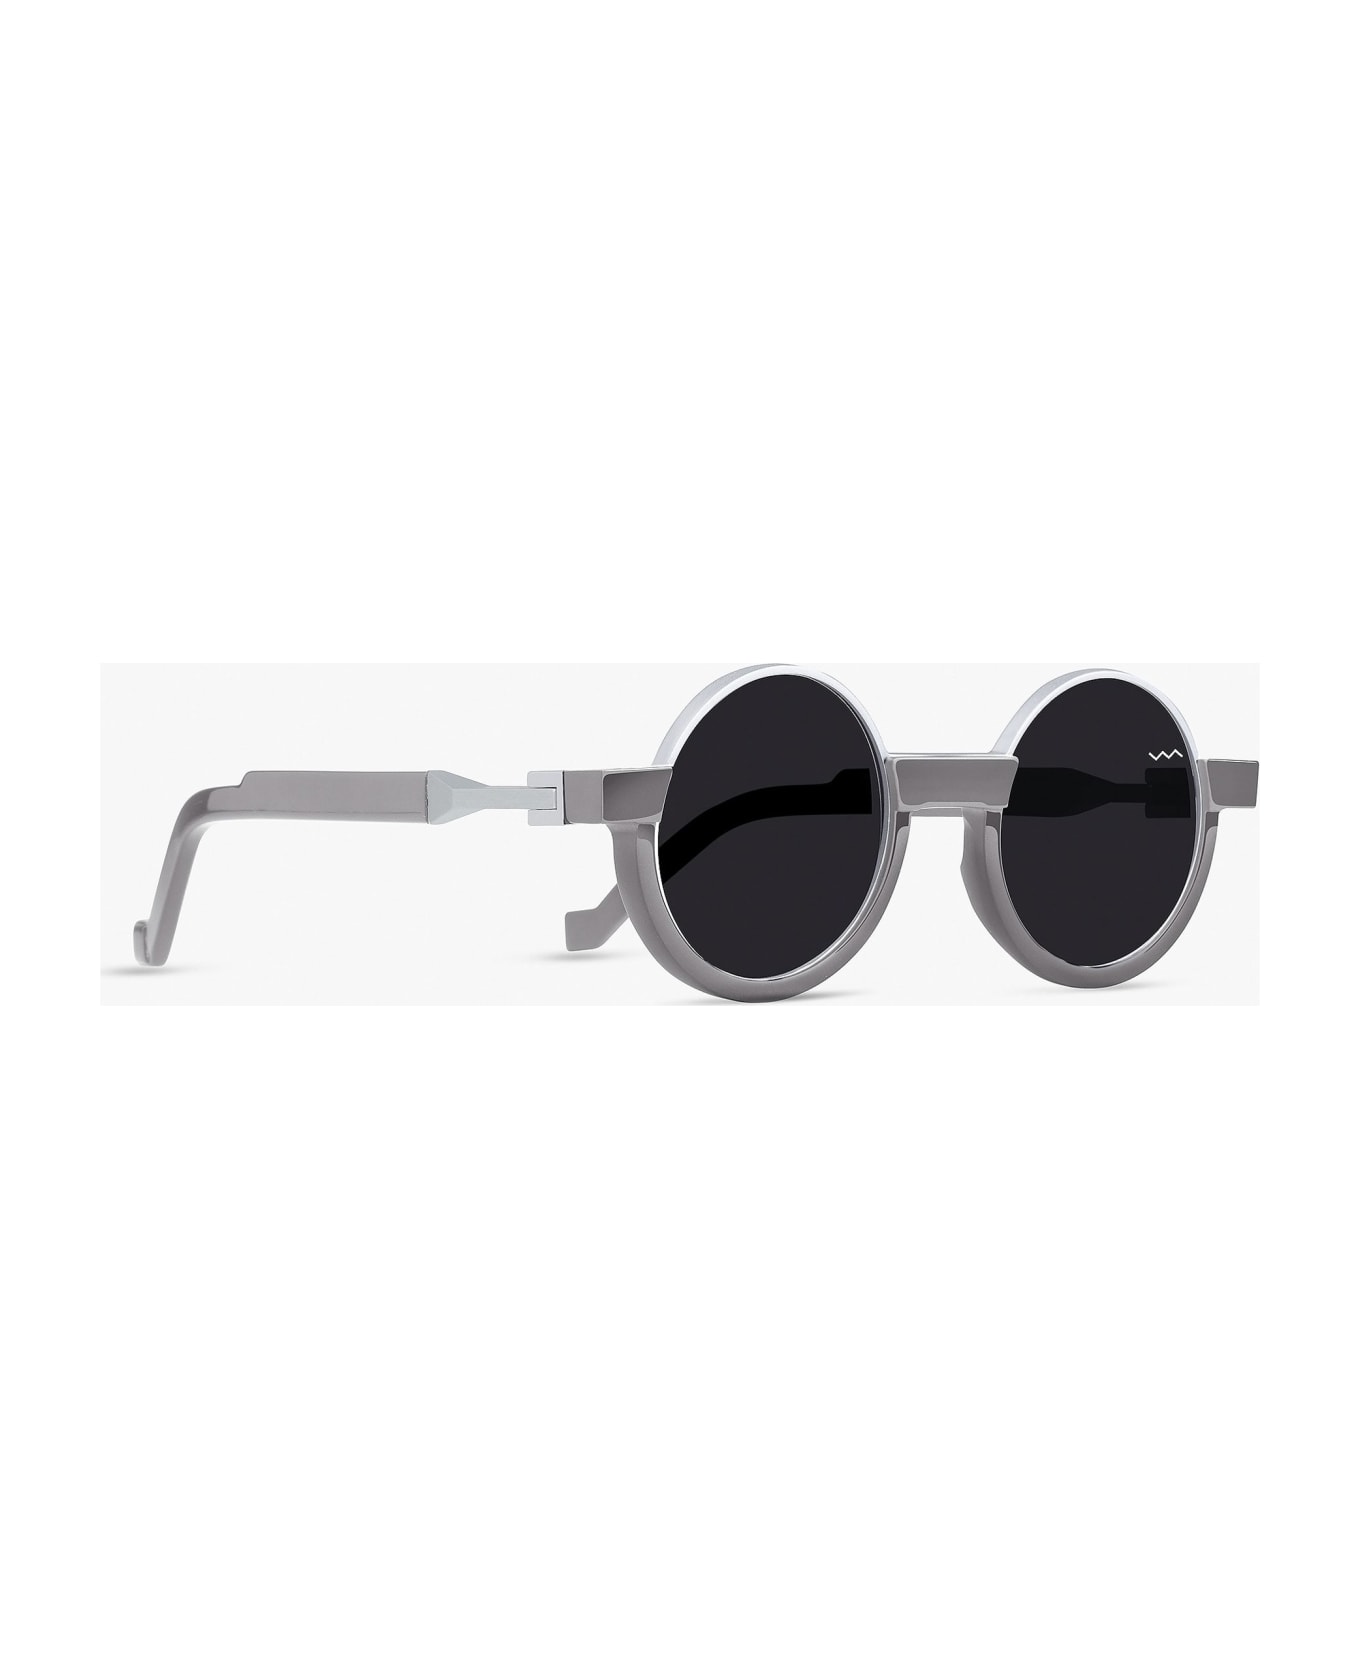 VAVA Cl0011 - Light Grey Sunglasses - light grey サングラス